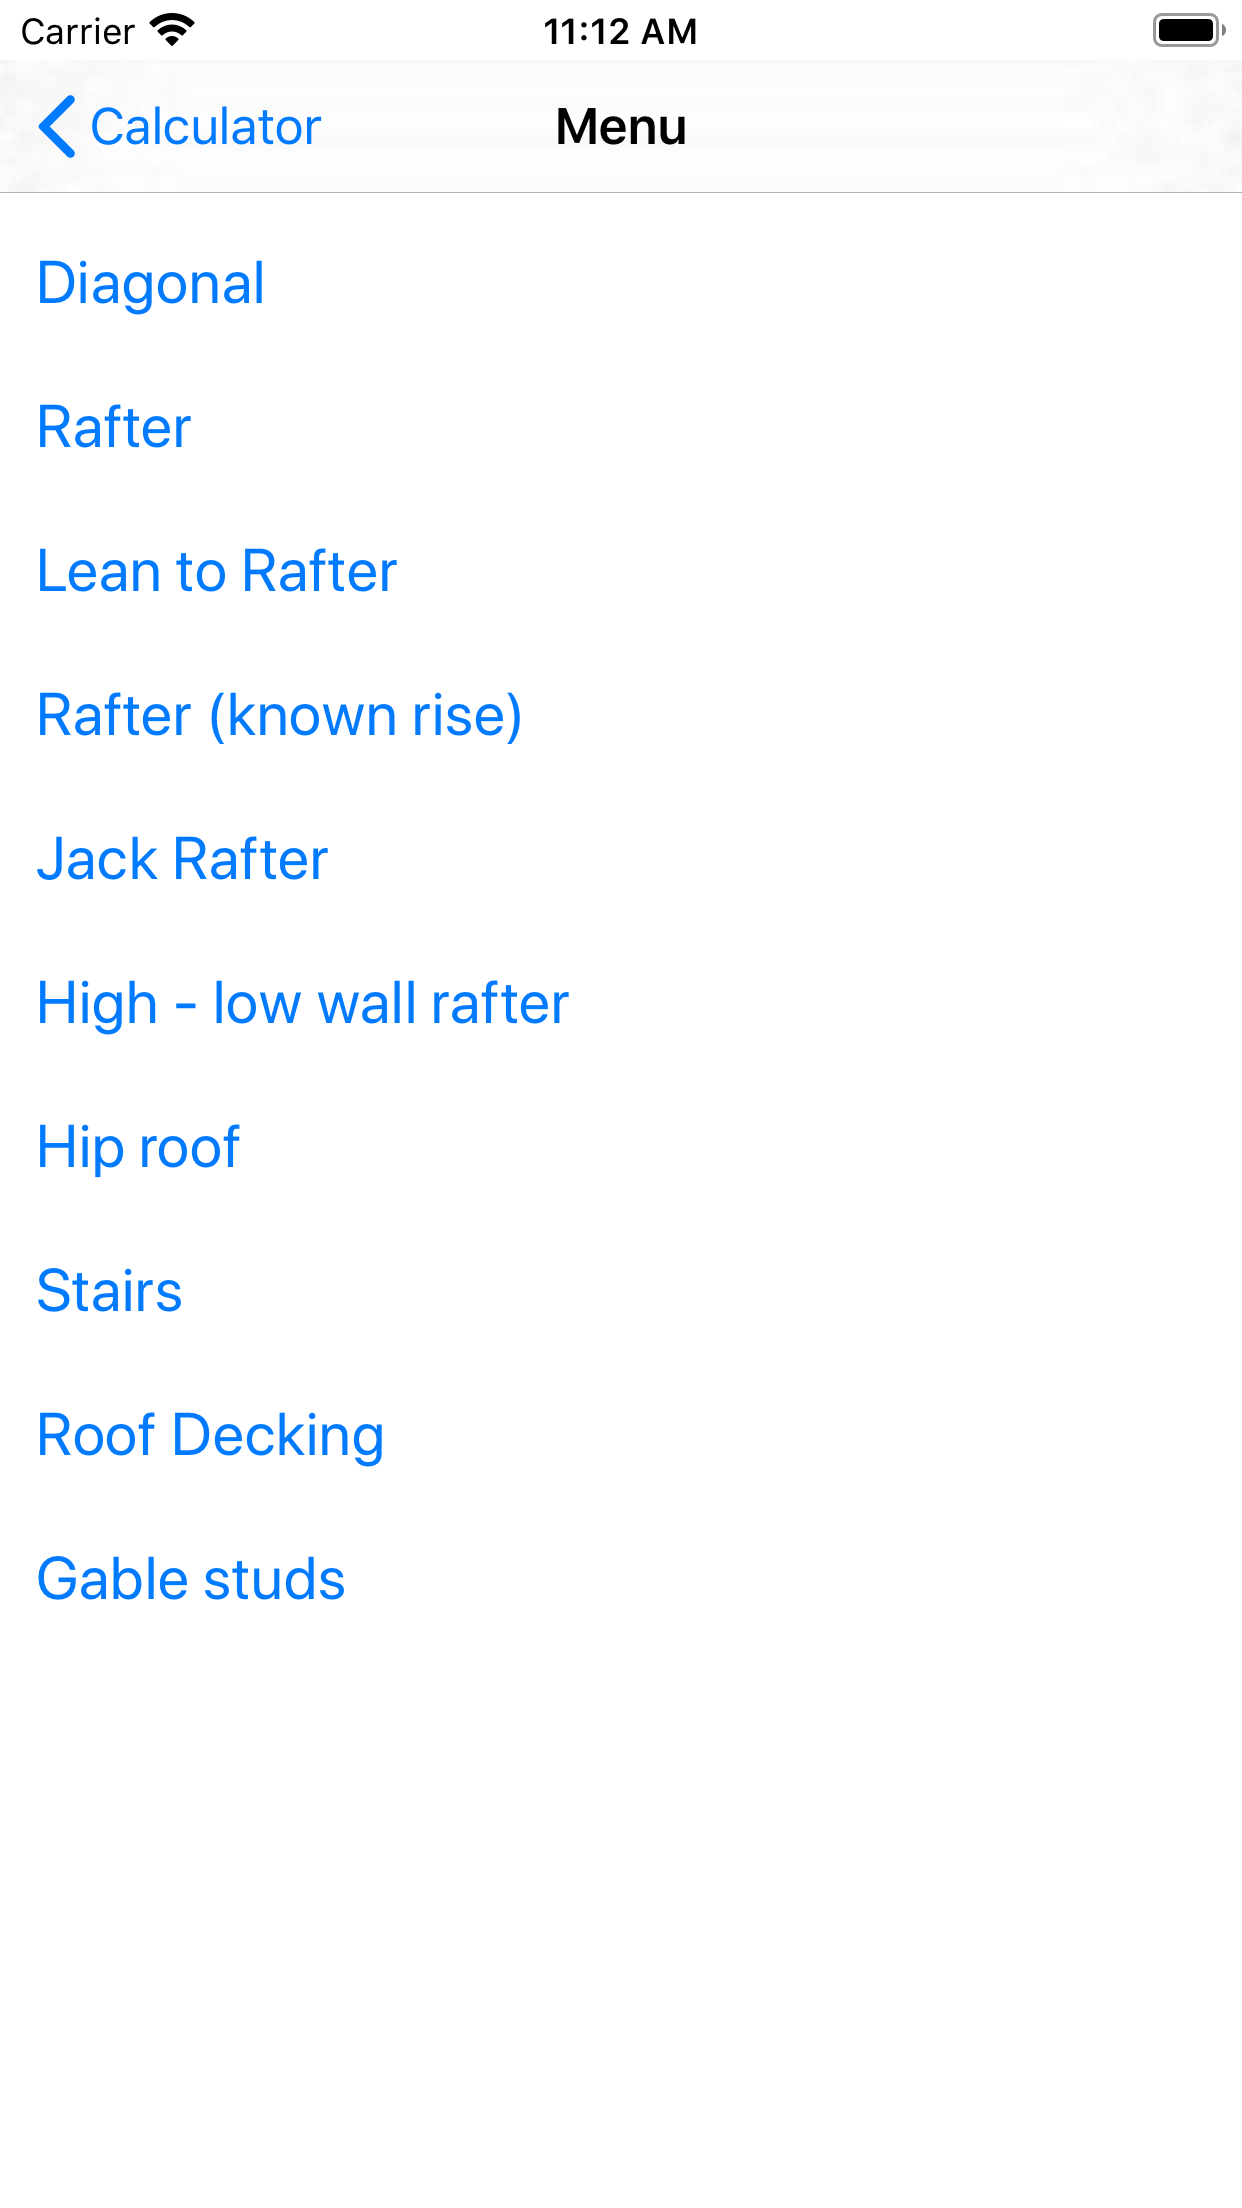 Rafter calculator menu